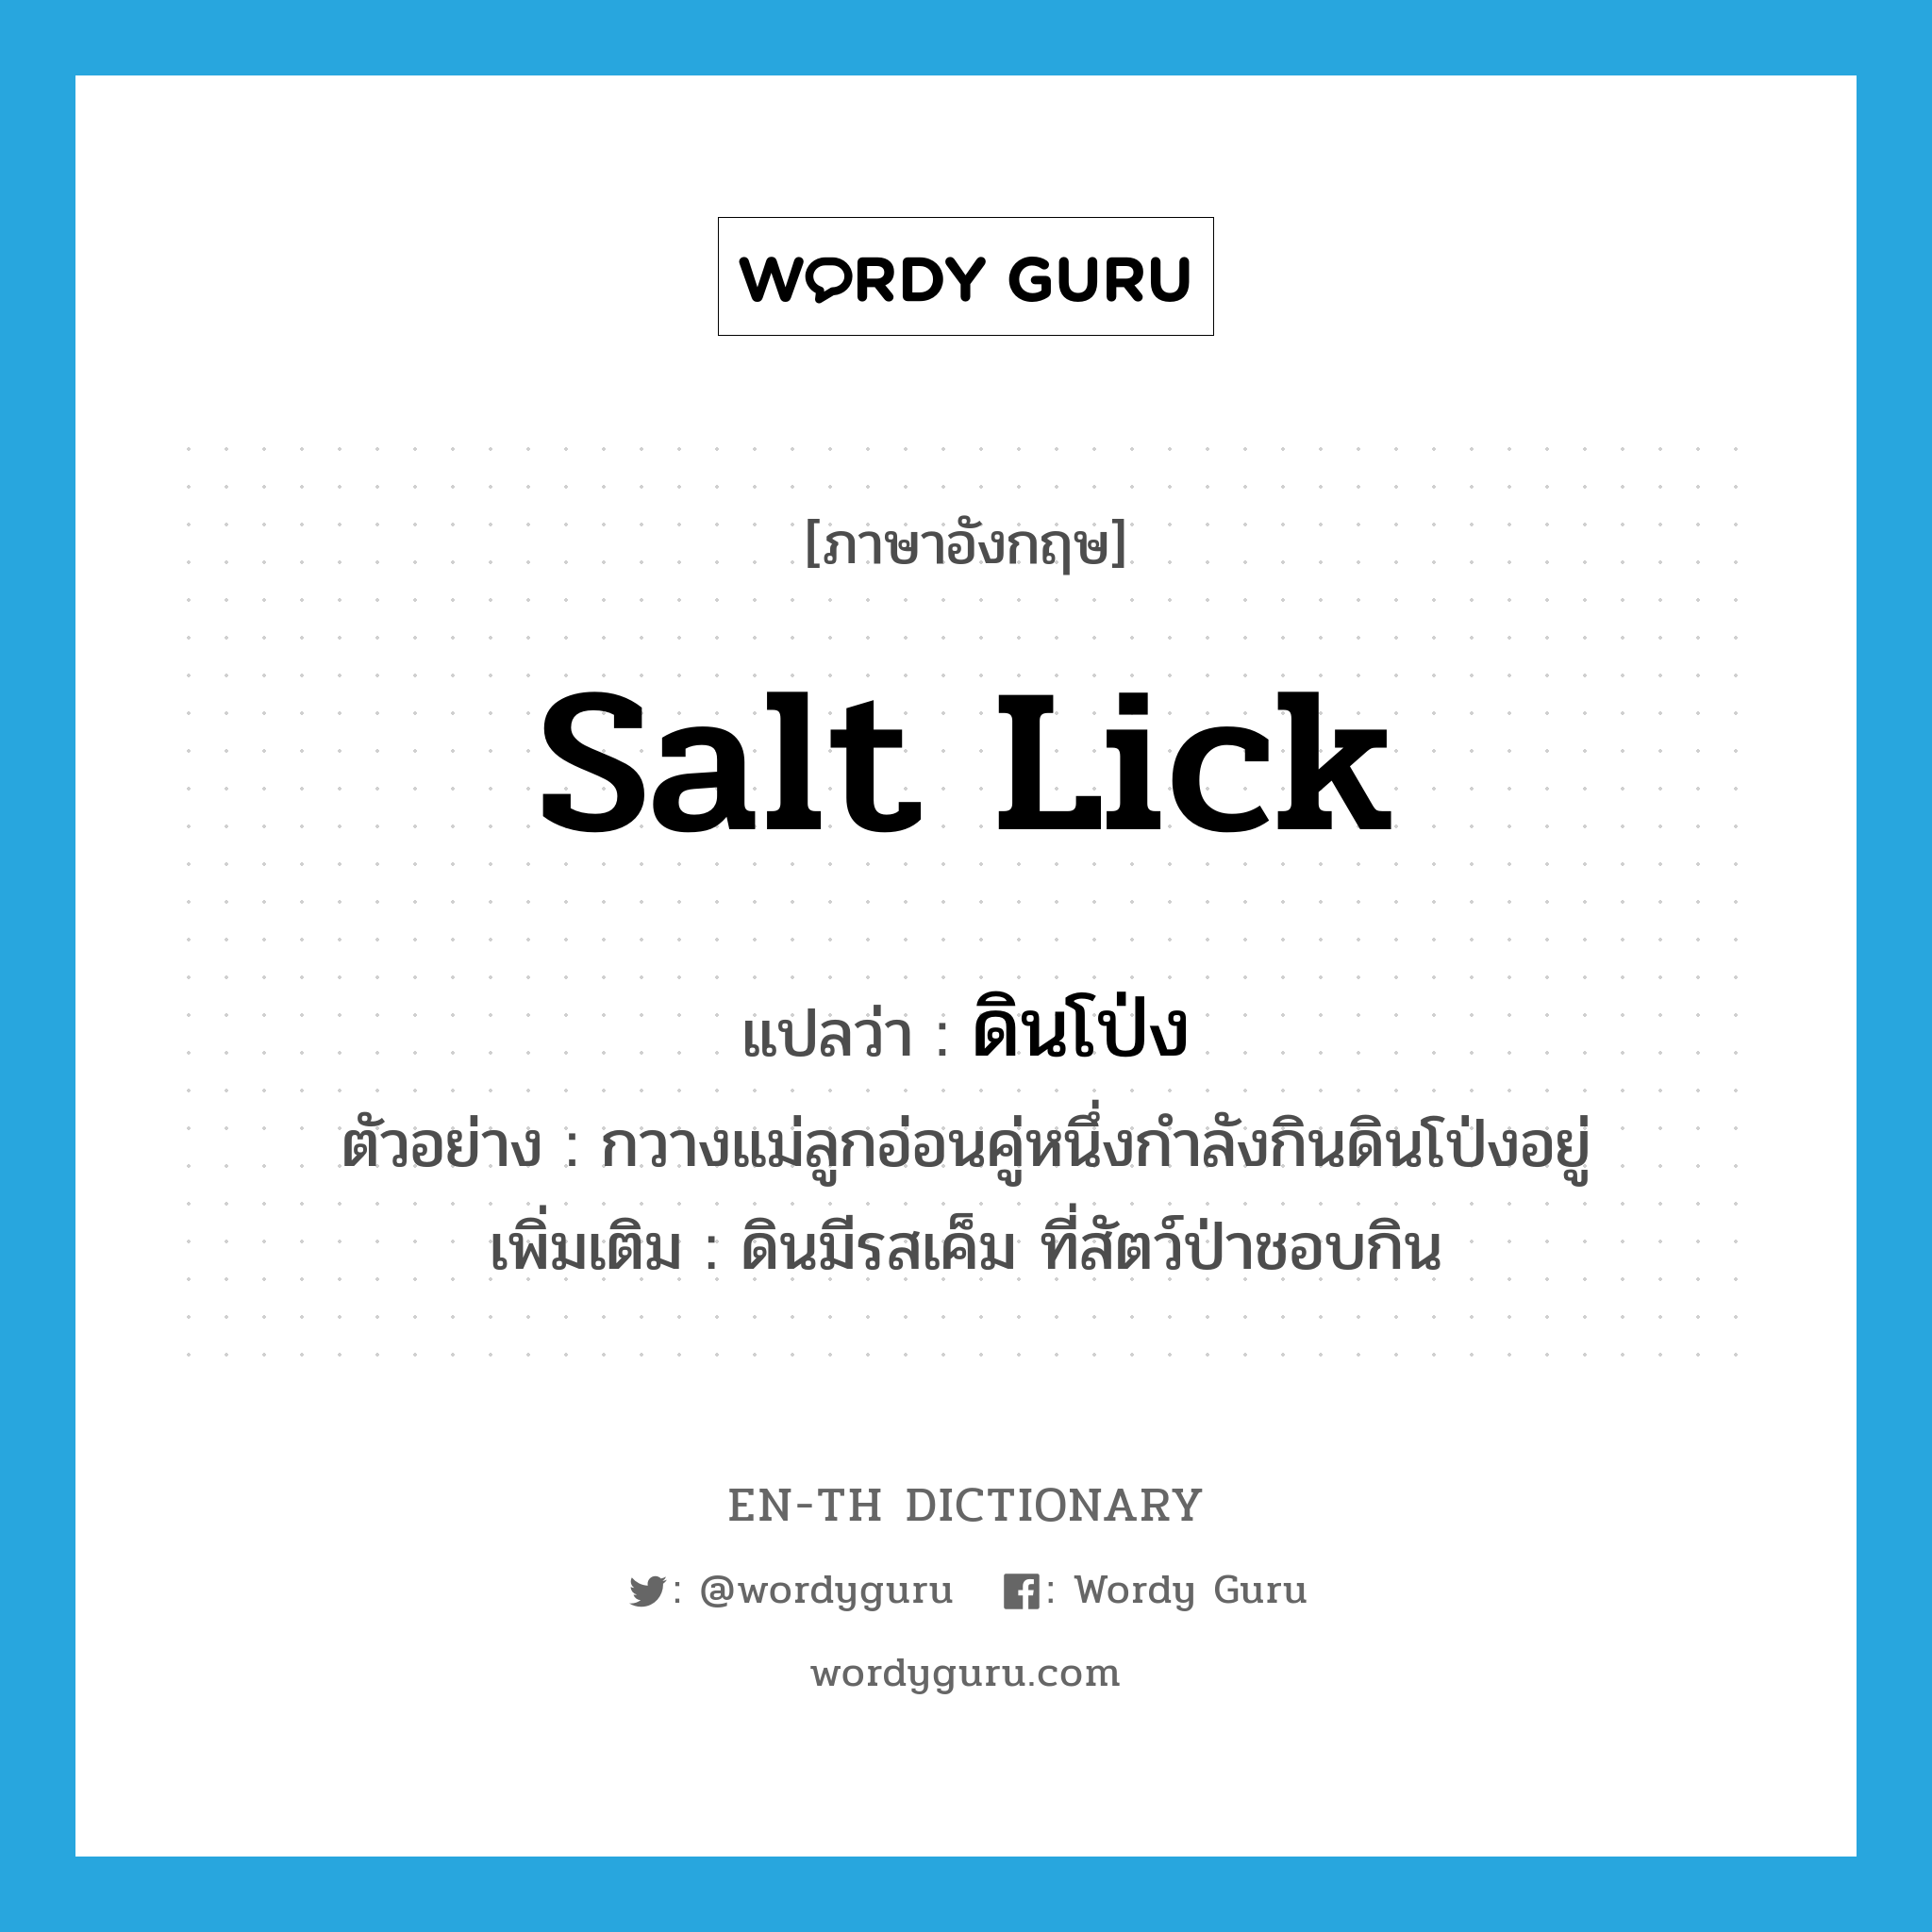 salt lick แปลว่า?, คำศัพท์ภาษาอังกฤษ salt lick แปลว่า ดินโป่ง ประเภท N ตัวอย่าง กวางแม่ลูกอ่อนคู่หนึ่งกำลังกินดินโป่งอยู่ เพิ่มเติม ดินมีรสเค็ม ที่สัตว์ป่าชอบกิน หมวด N